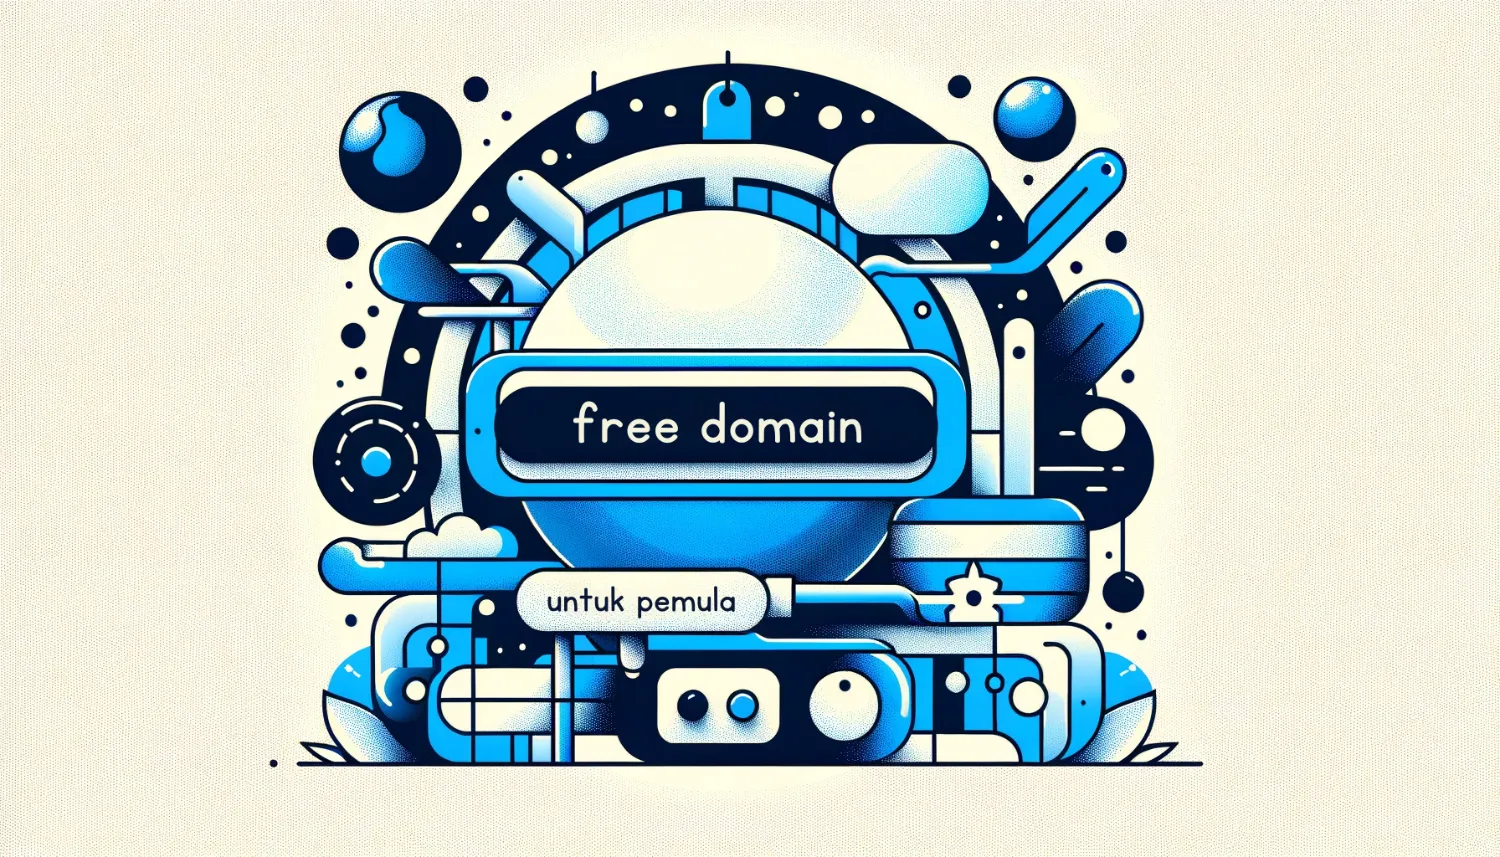 Ilustrasi penawaran domain gratis dalam paket hosting, desain minimalis, warna biru dominan, ideal untuk pemula.